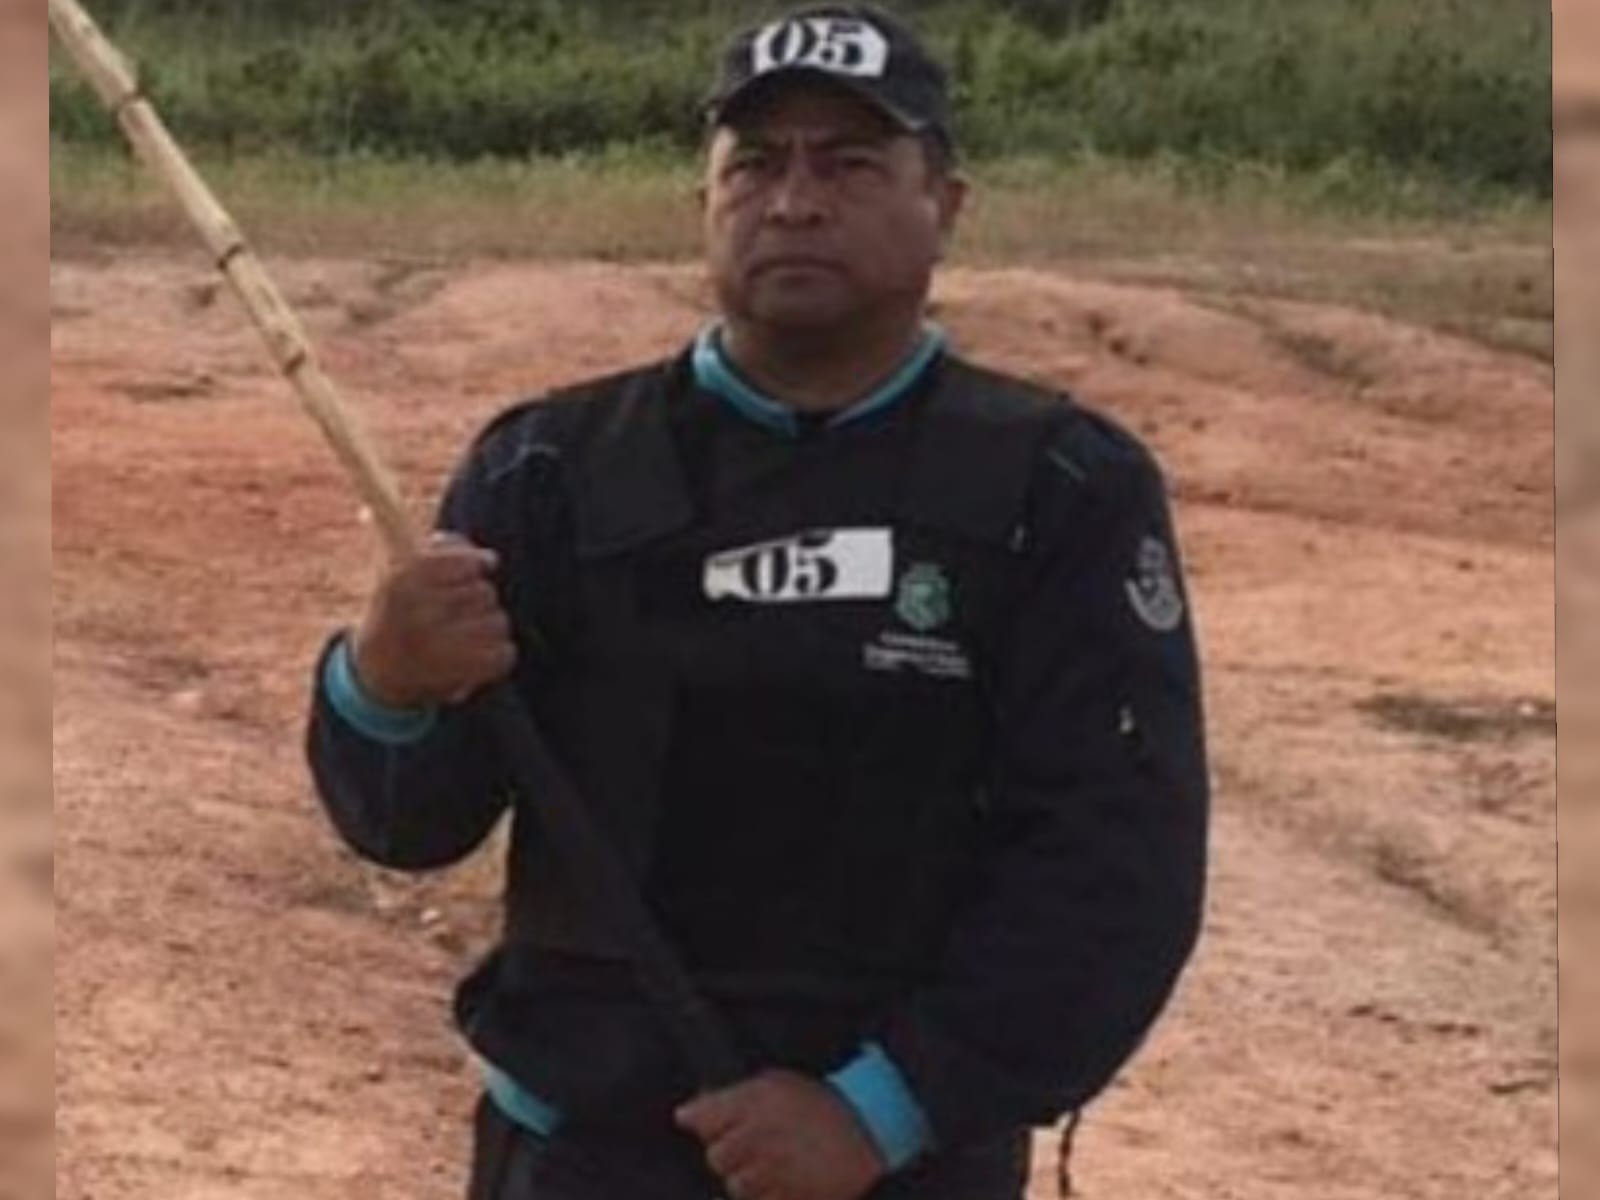 Motociclista é denunciado por atropelar e matar policial em serviço no Ceará